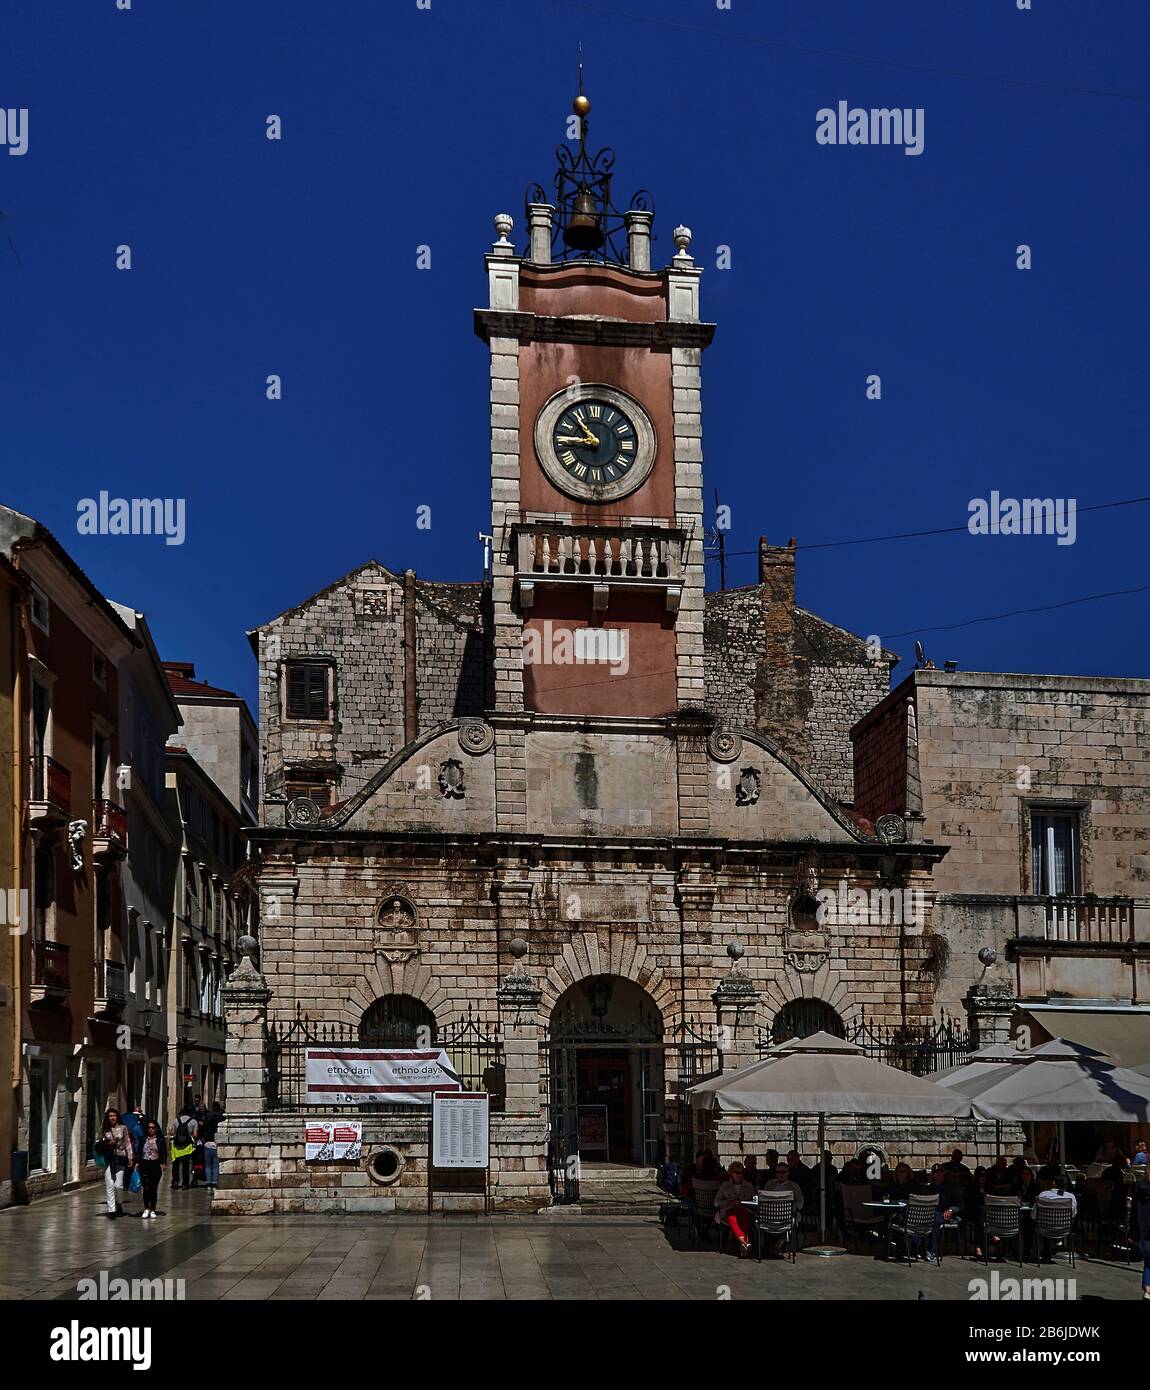 Zadar, Provinz Dalmatien, Kroatien, Zadar ist eine bezaubernde befestigte Stadt, Narodni trg ist das Zentrum des öffentlichen Lebens in Zadar von der Renaissance bis heute. Auf dem Gelände des großen Platzes, der Platea magna, wurden im frühen Mittelalter die Grundmauern städtischer Institutionen gelegt. .im 16. Jahrhundert wurde das Gebäude der Stadtwache (Gradska straža) mit dem Uhrturm der Stadt erbaut. Stockfoto